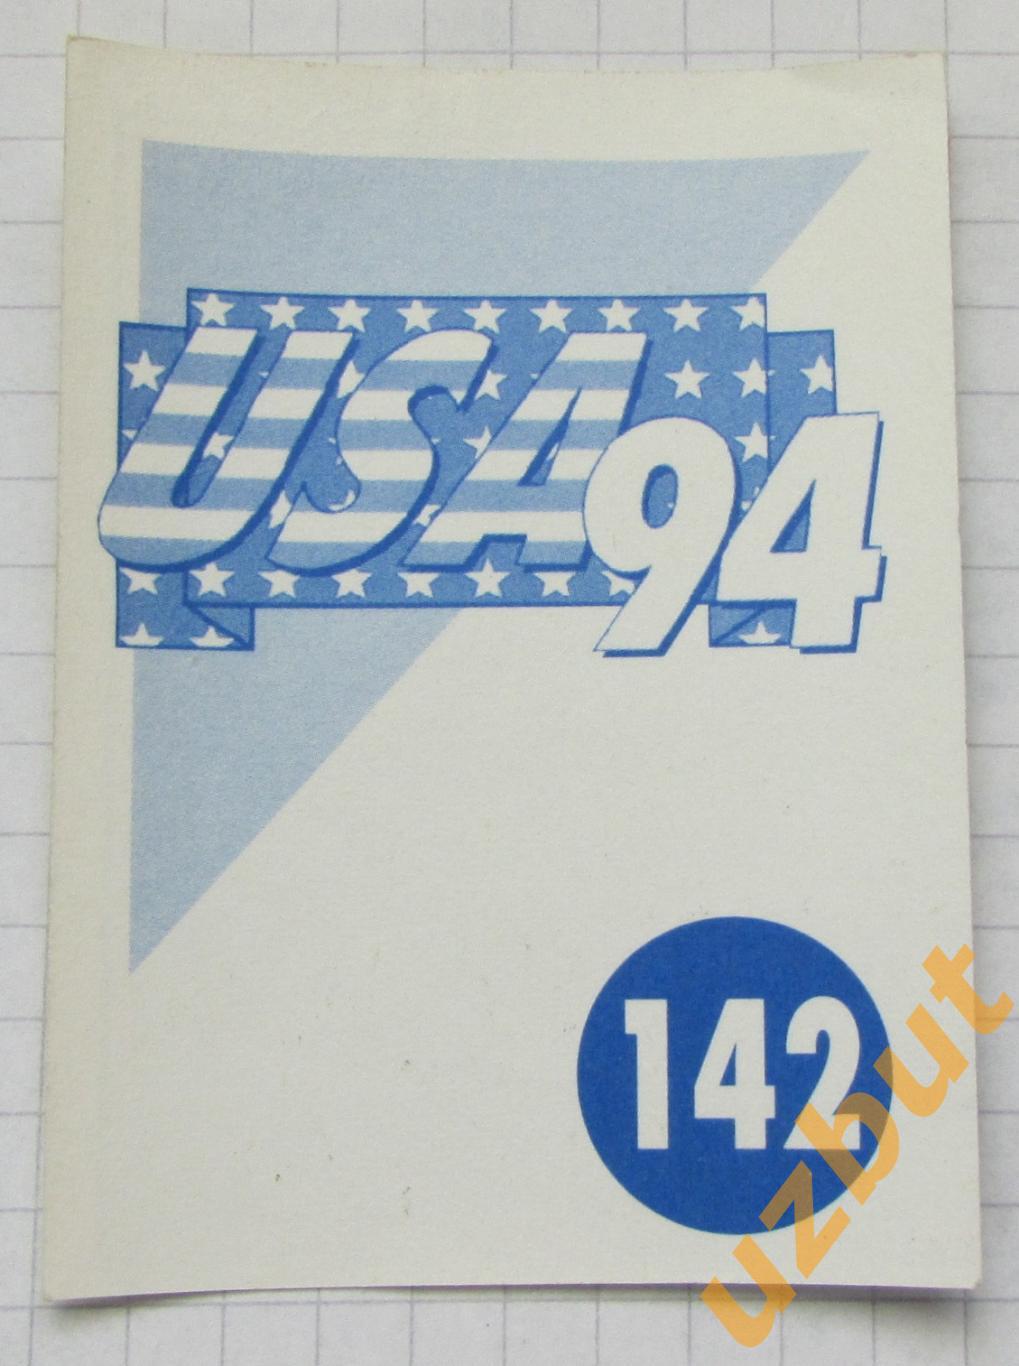 Наклейка Стадион Чикаго 2 № 142 Euroflash ЧМ 1994 США 1